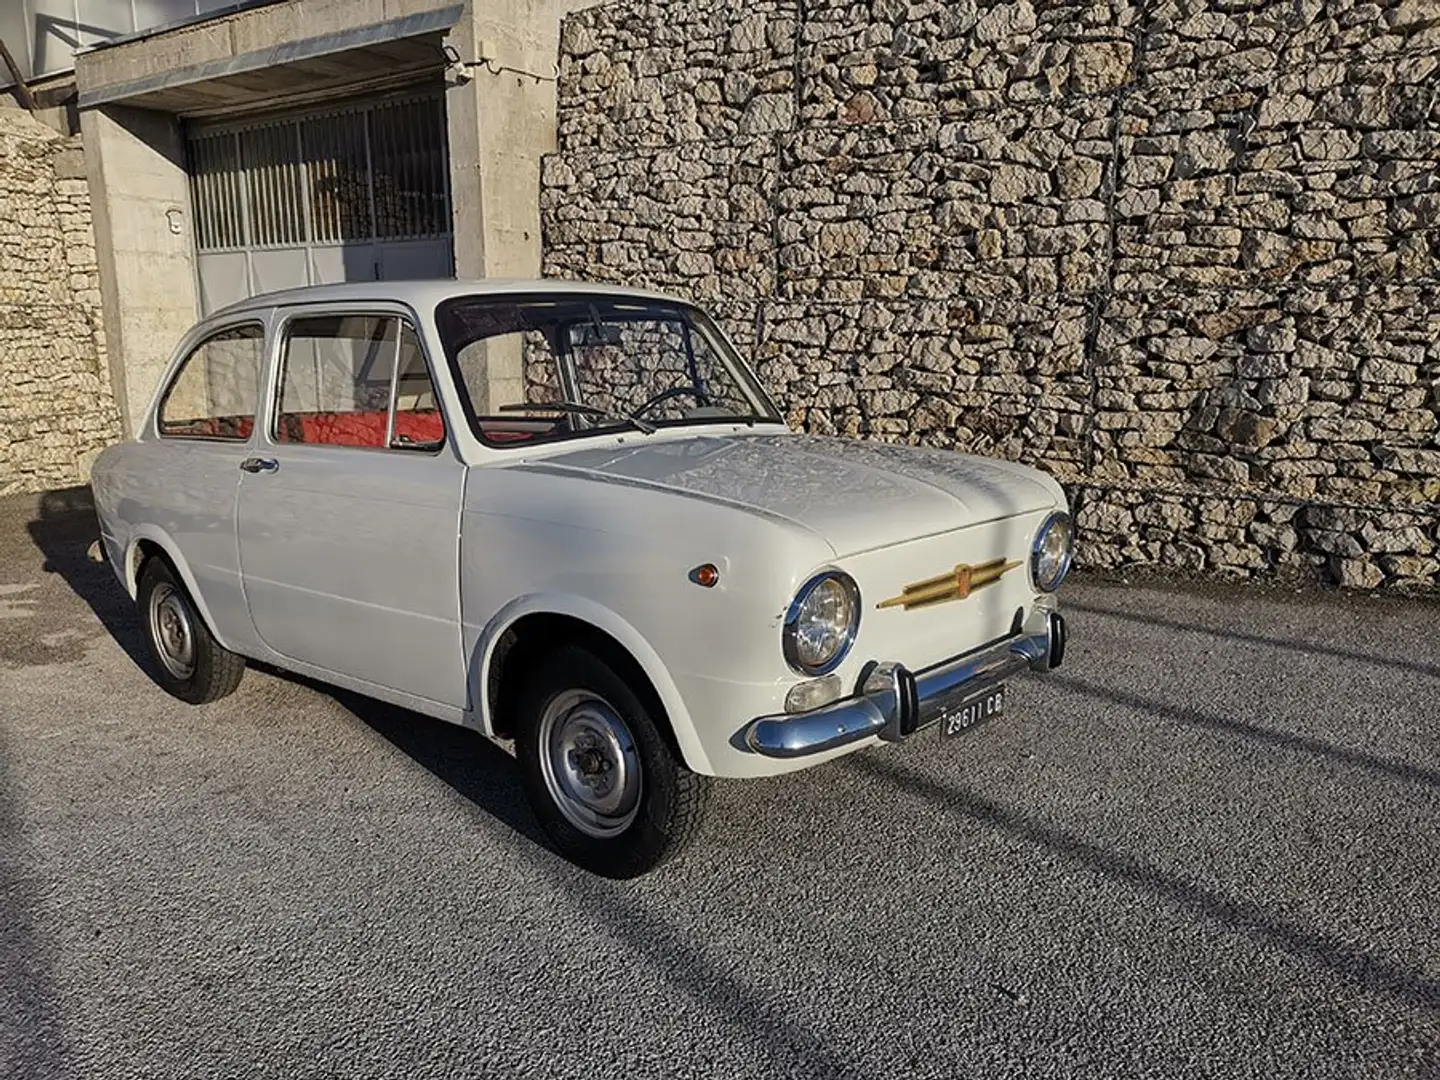 Fiat 850 Special 2 proprietari precedenti, conservata! White - 1